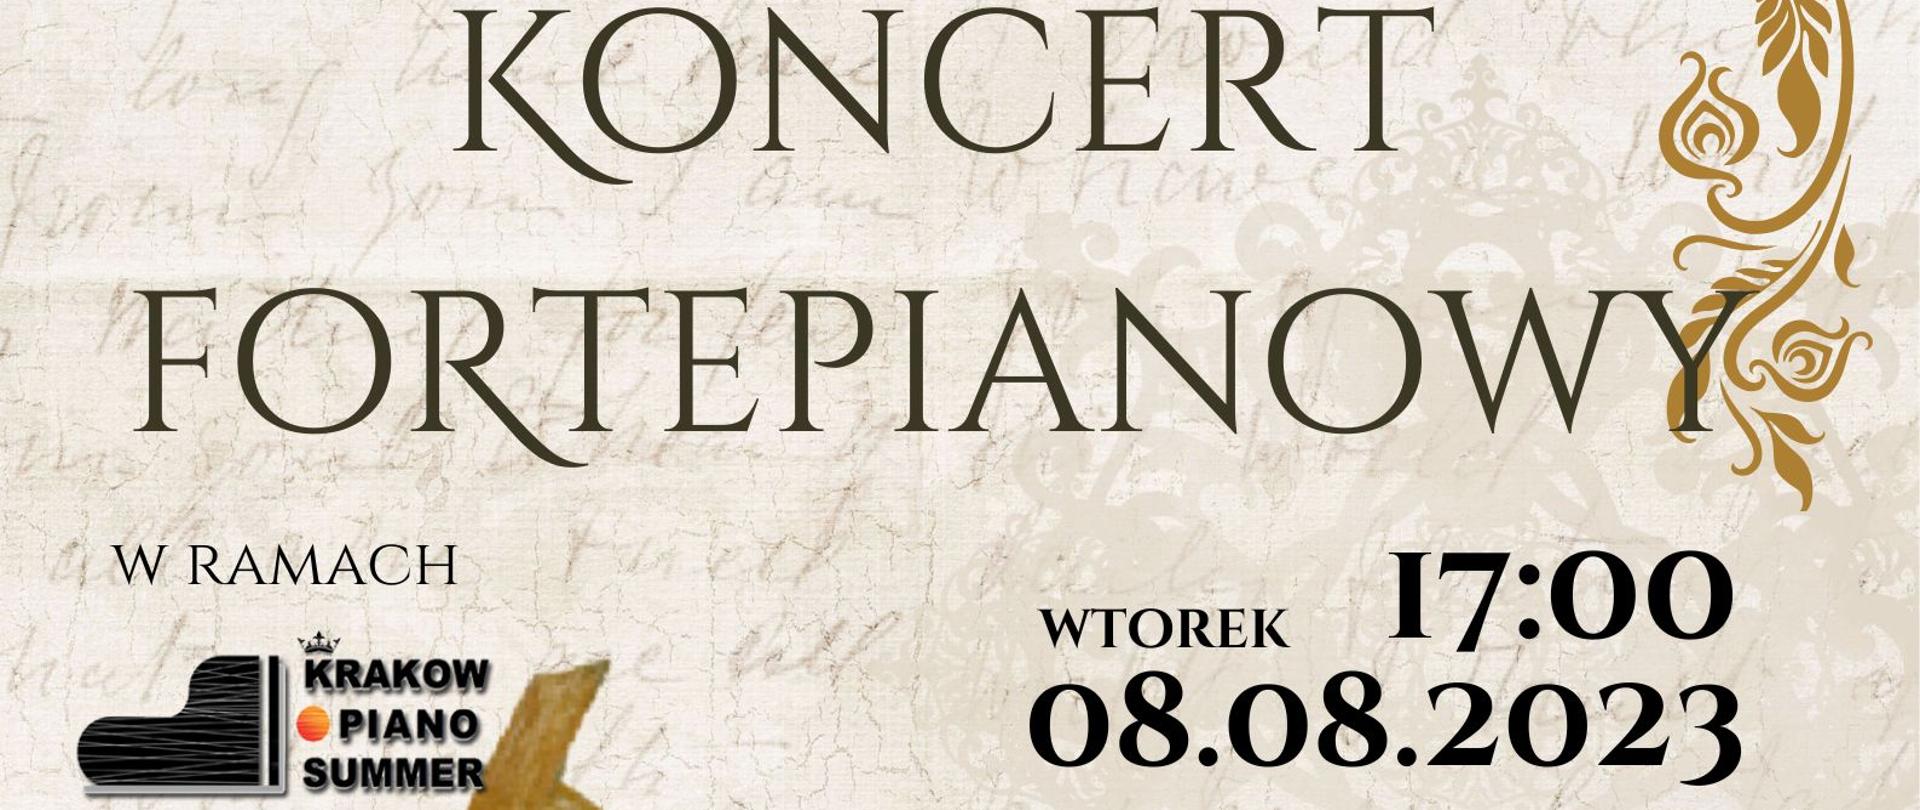 Plakat informacyjny dotyczący Koncertu Fortepianowego odbywającego się 08.08.2023 r. o godz. 17.00.
Na szarym tle, rysowany pianista grający na fortepianie stojącym na sukiennicach. 